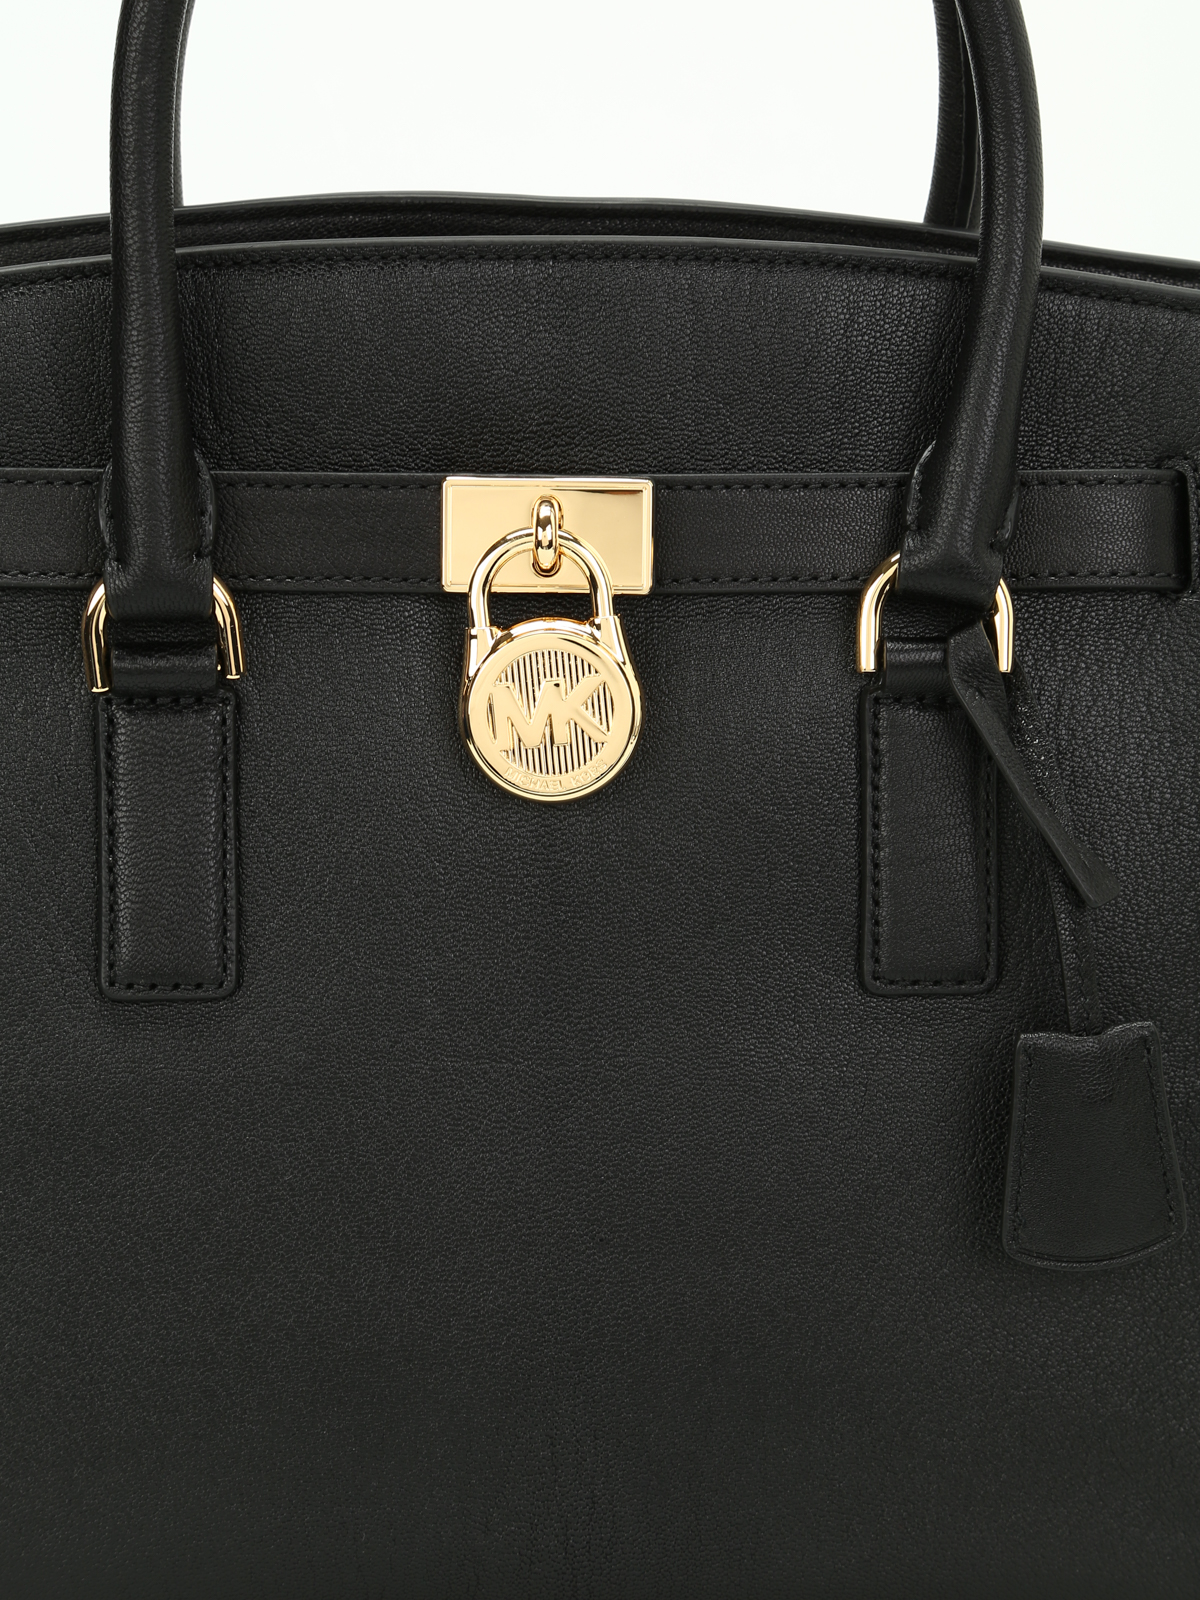 Totes bags Michael Kors - Hamilton grainy leather satchel - 30S7GHMS7L001